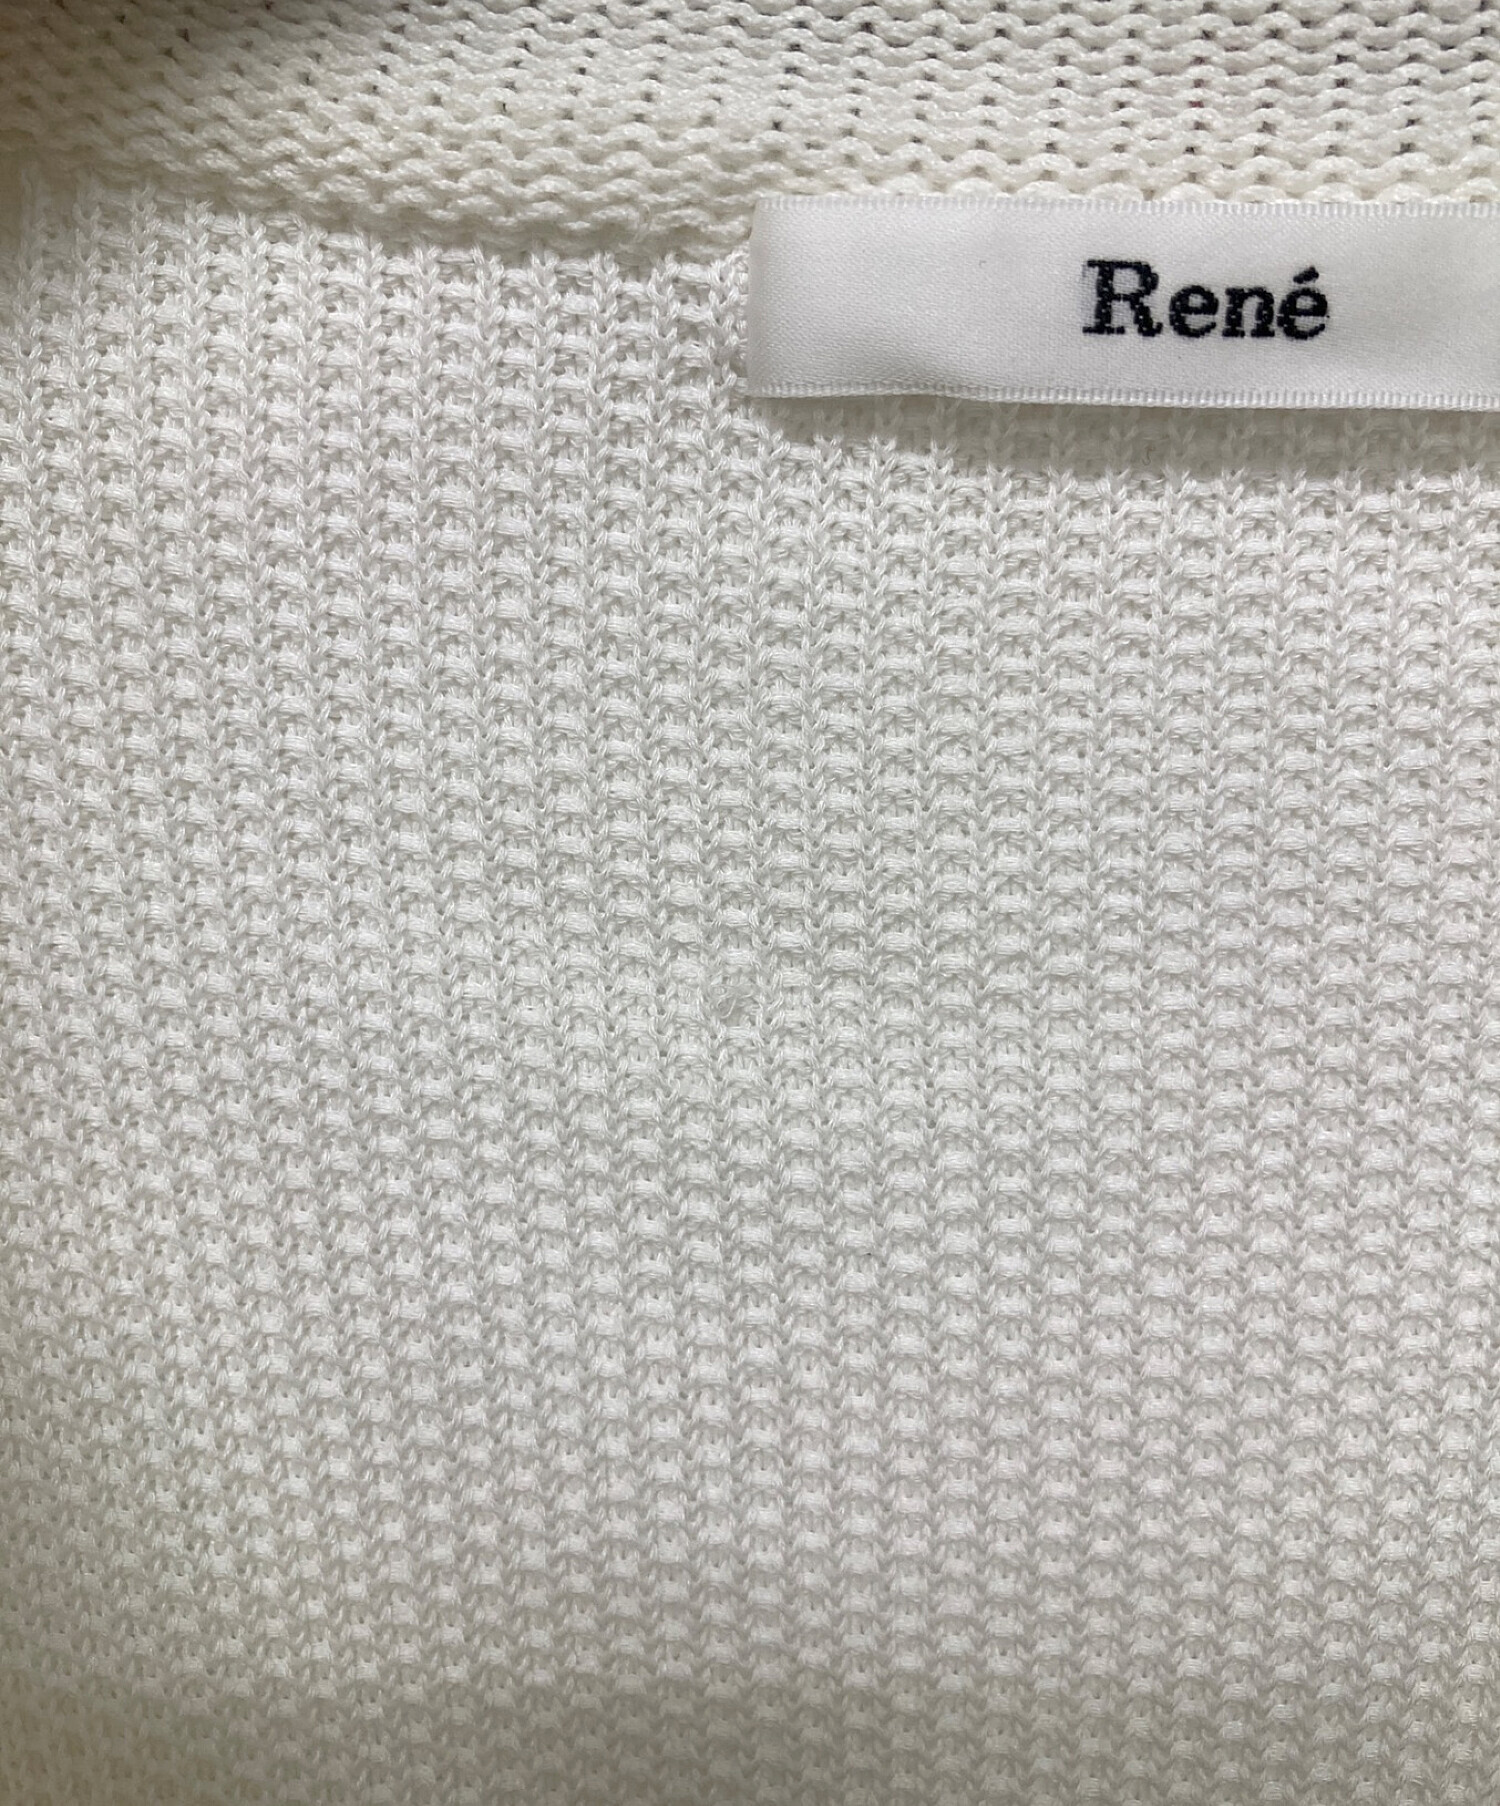 Rene (ルネ) パールスライダーツイードニットジャケット ホワイト サイズ:34